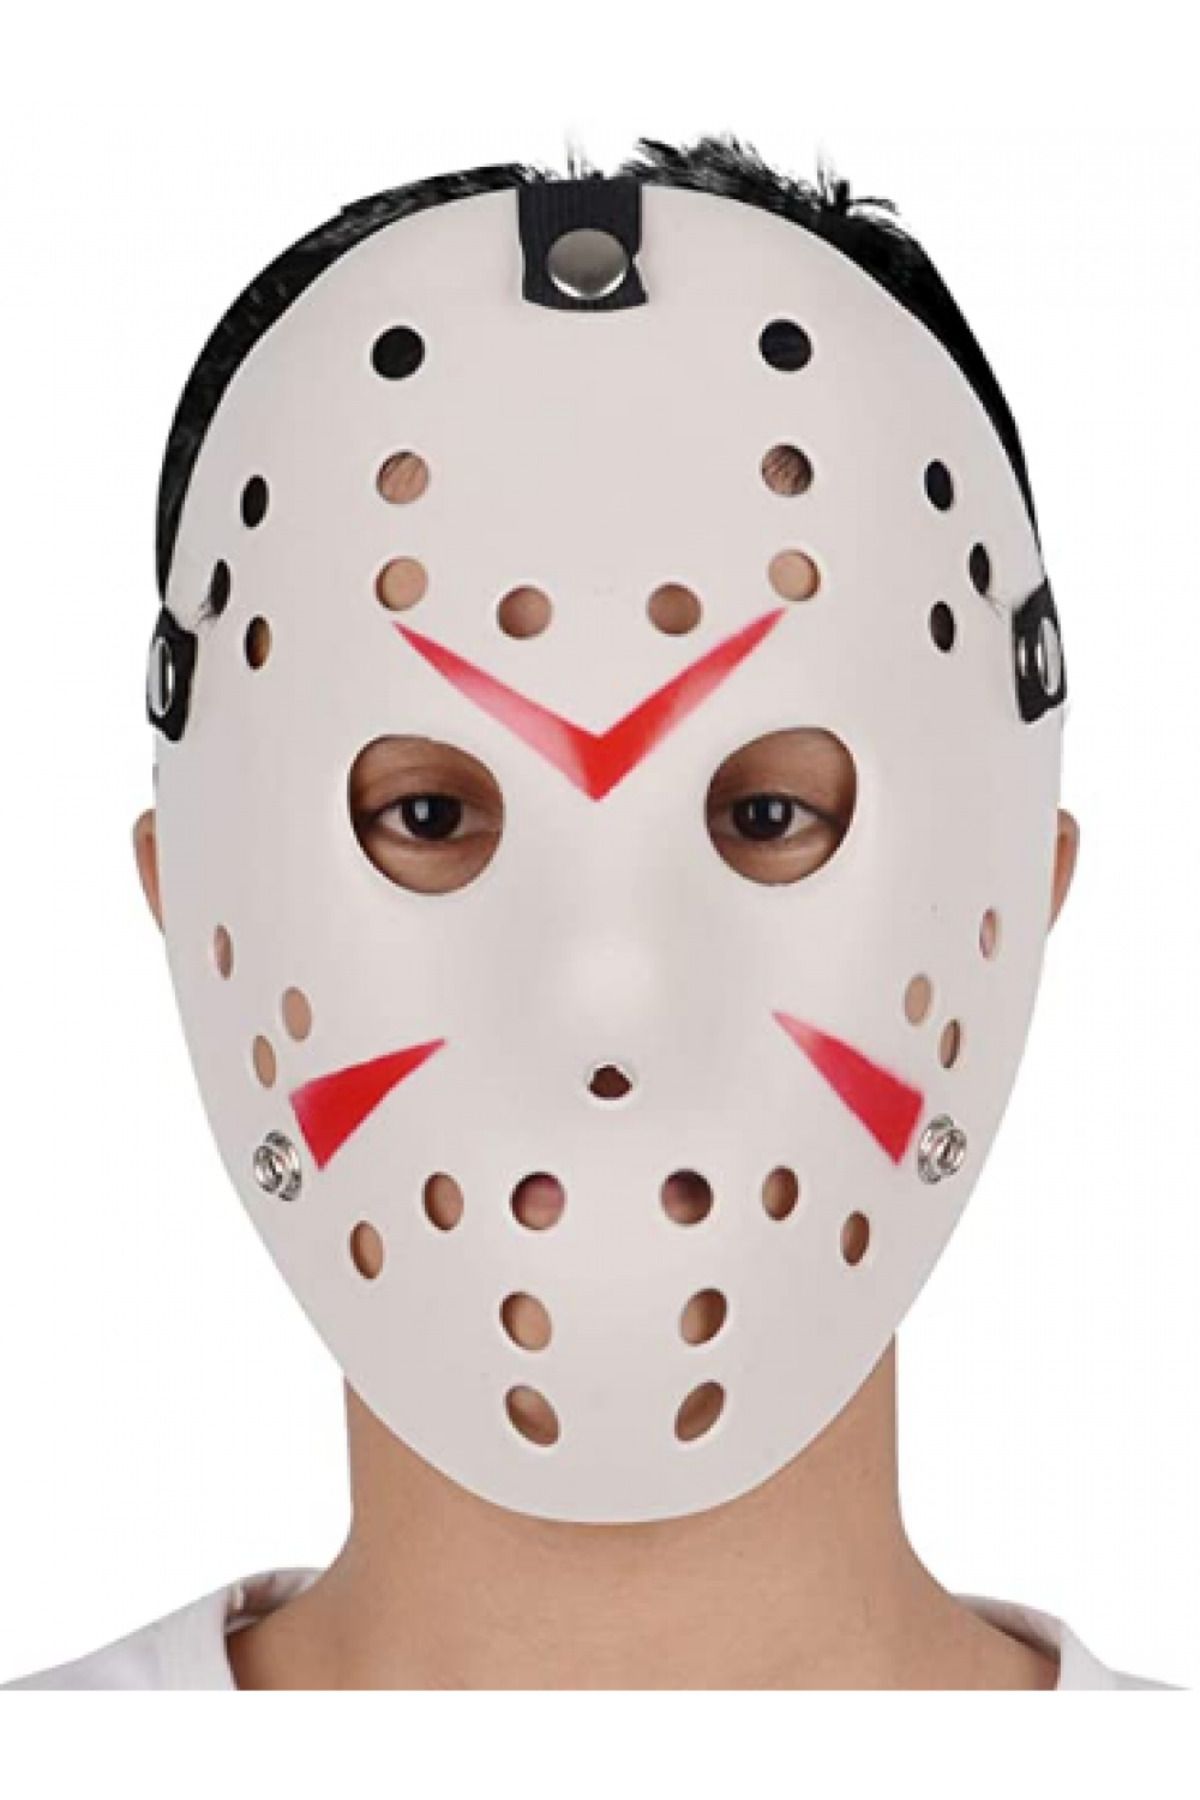 Skygo Beyaz Renk Kırmızı Çizgili Tam Yüz Hokey Jason Maskesi Hannibal Maskesi